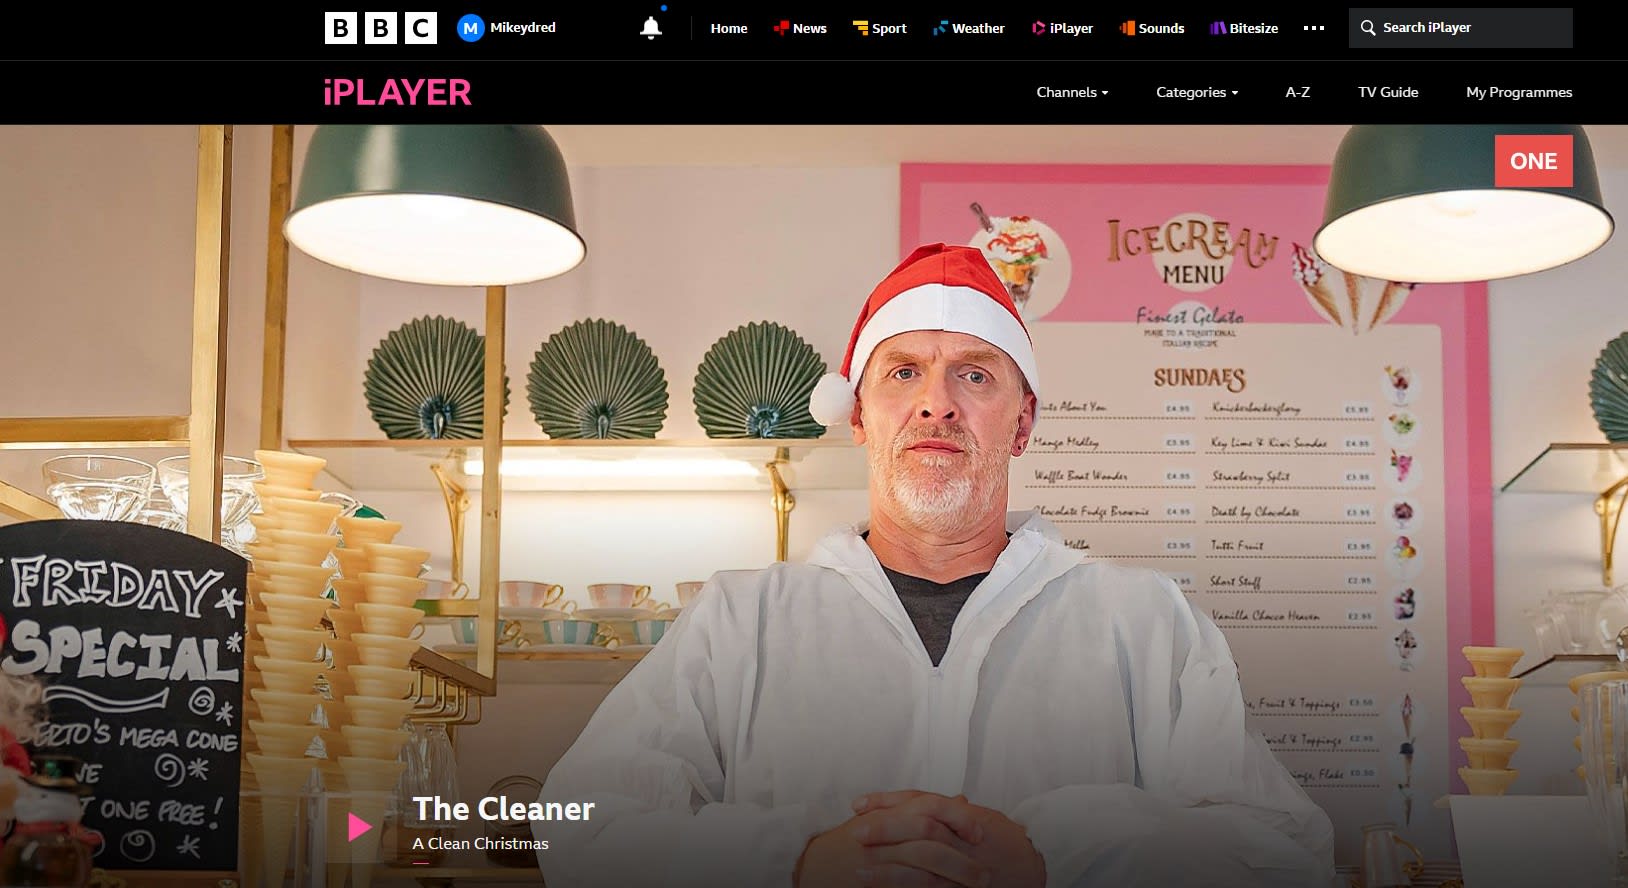 BBC iPlayer - The Cleaner